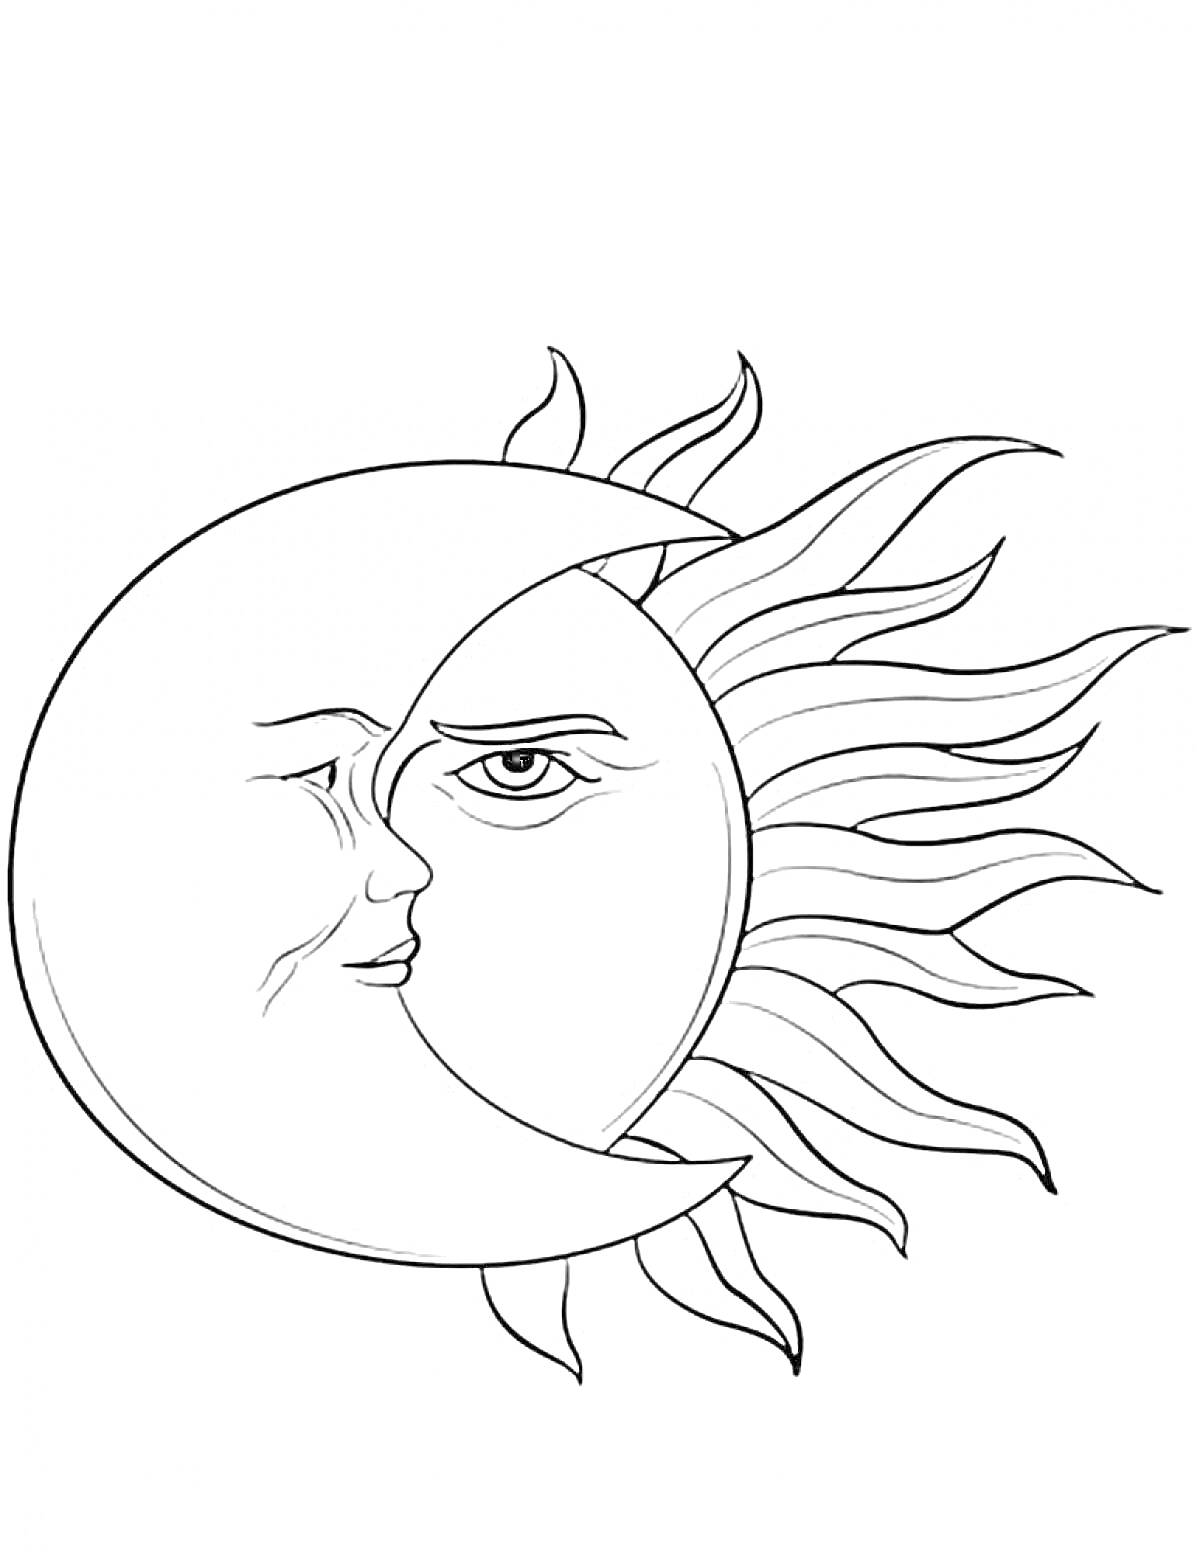 Месяц и Солнце с лицами в форме полумесяца и солнечных лучей